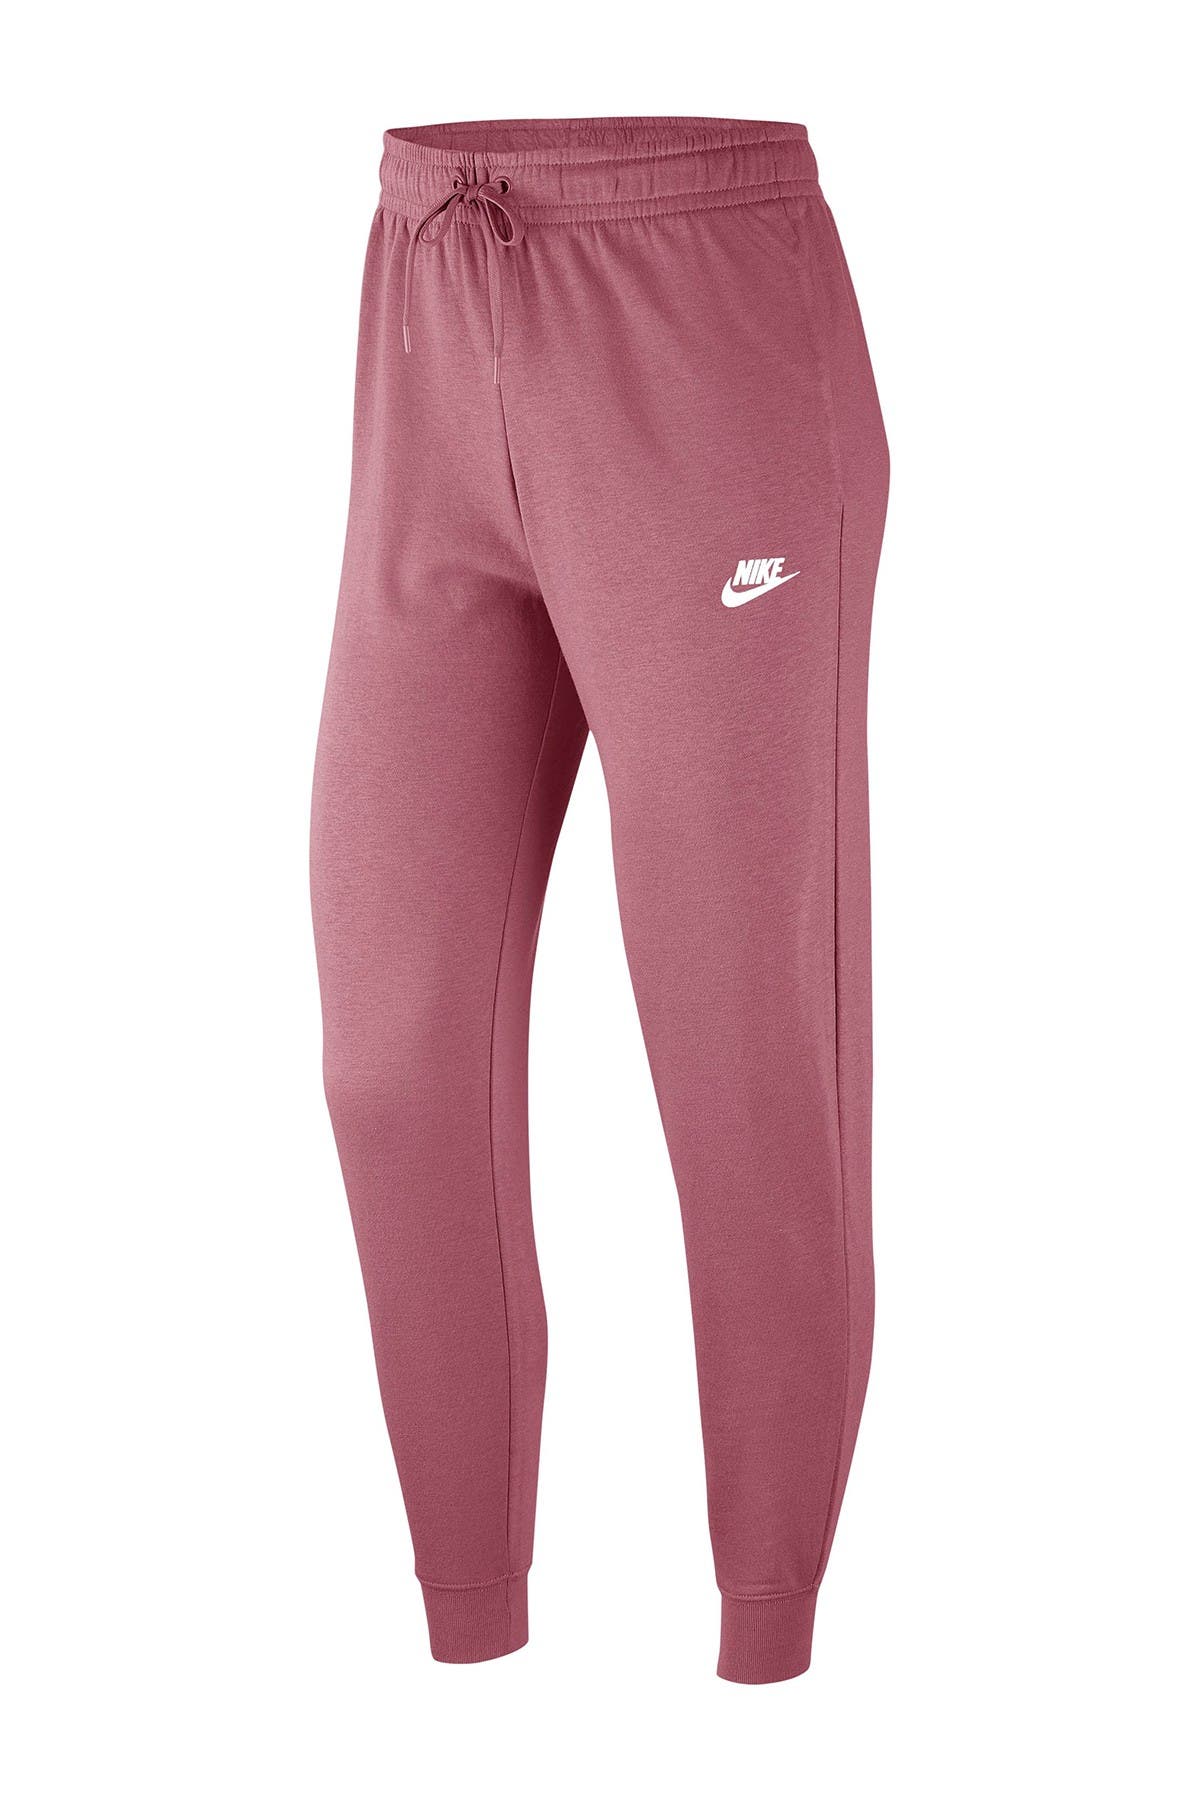 Nike | Fleece Knit Sweatpants | HauteLook